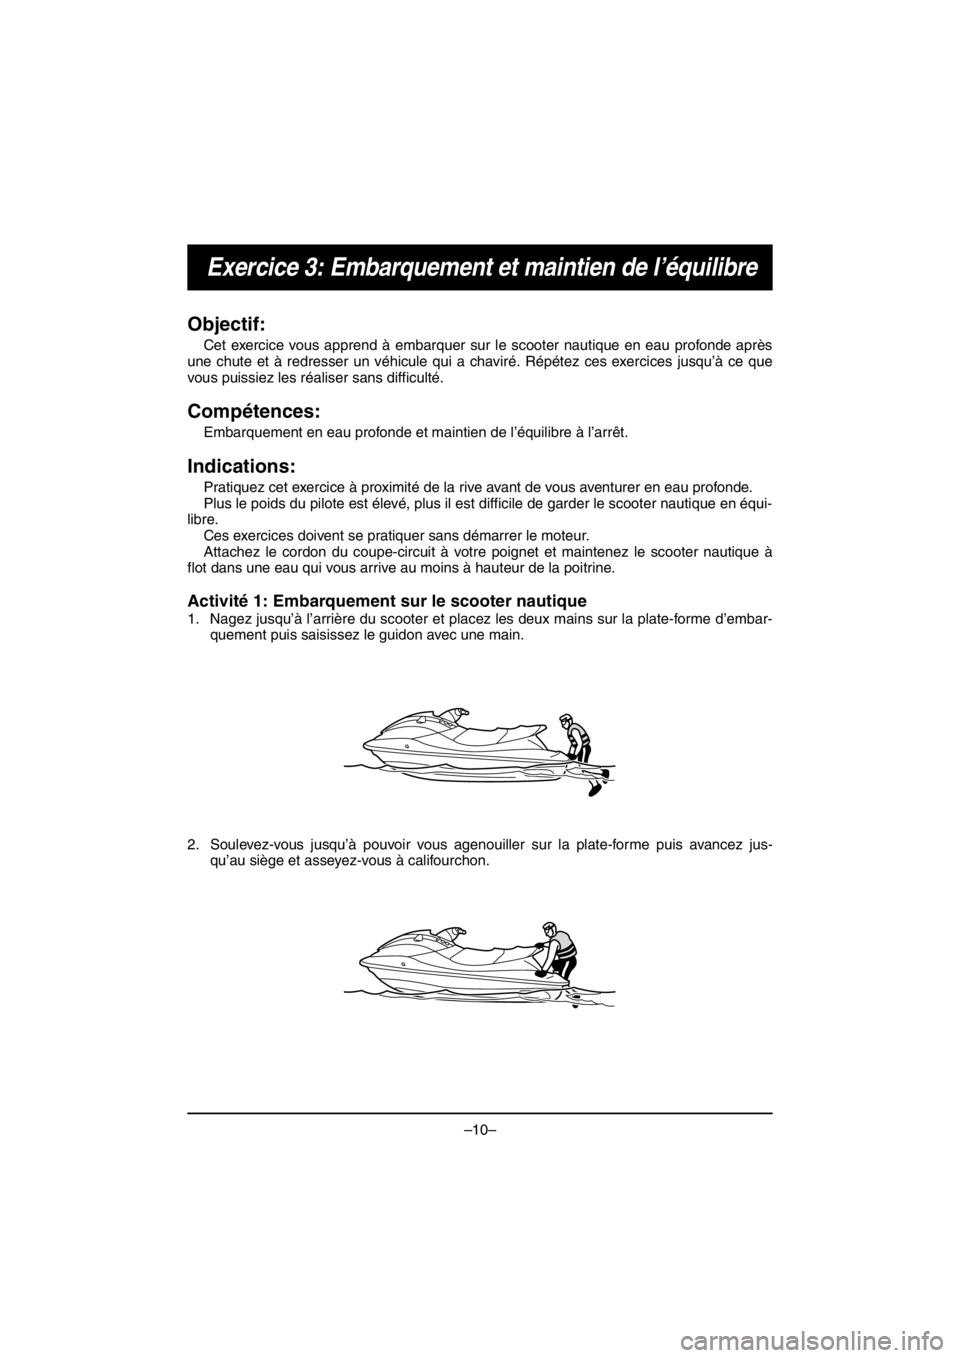 YAMAHA EX SPORT 2017  Manuale duso (in Italian) –10–
Exercice 3: Embarquement et maintien de l’équilibre
Objectif:
Cet exercice vous apprend à embarquer sur le scooter nautique en eau profonde après
une chute et à redresser un véhicule q